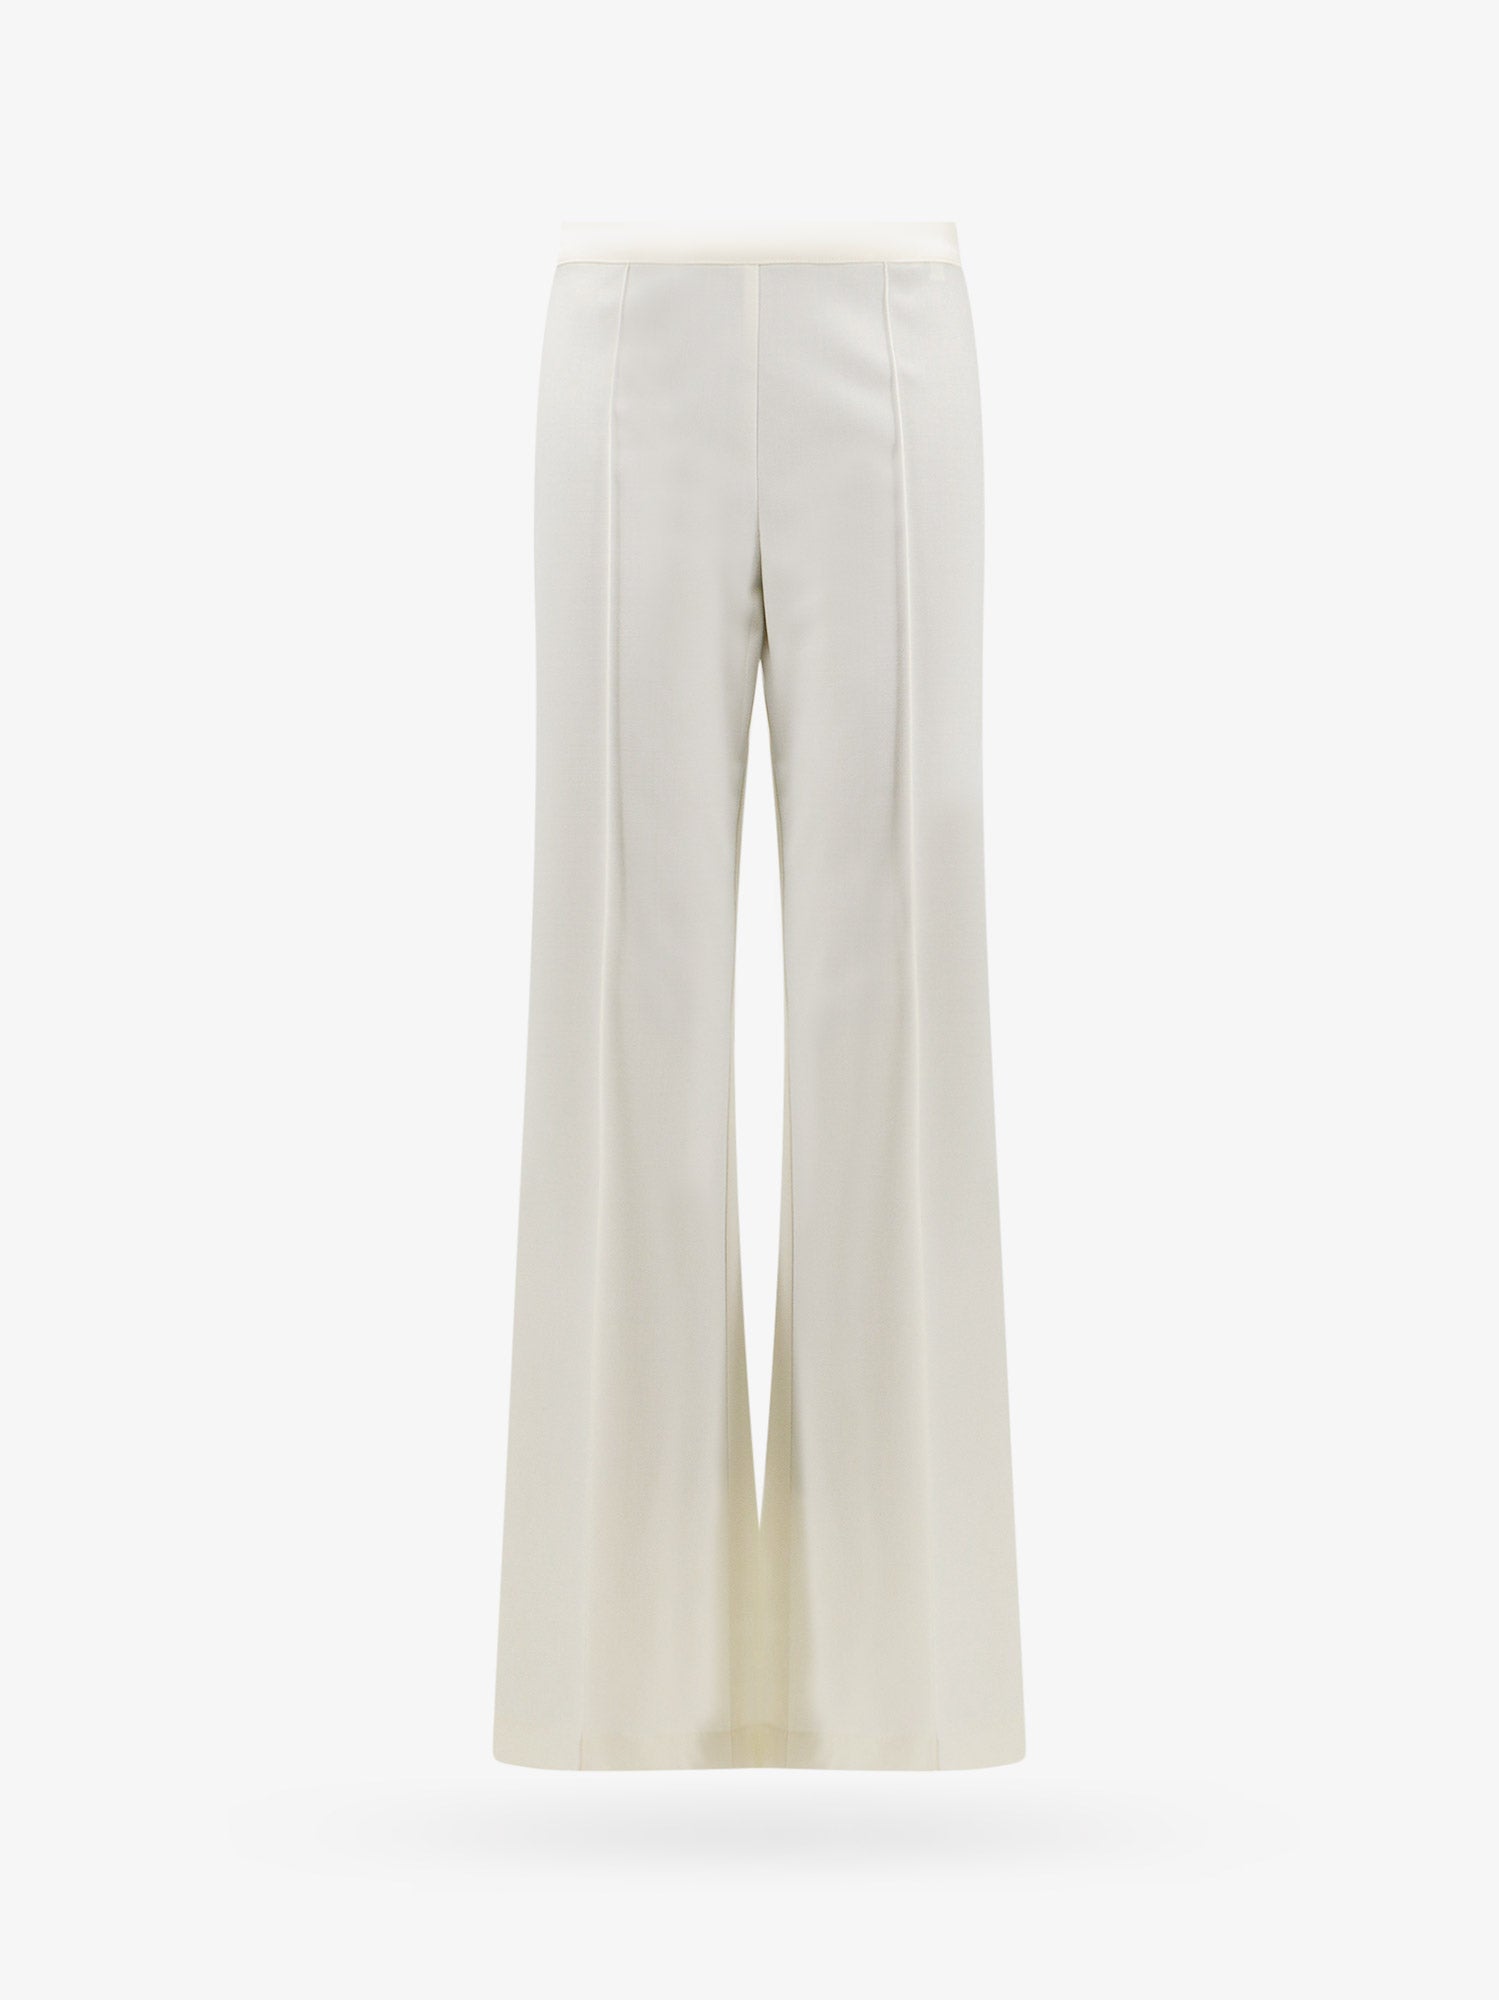 Erika Cavallini Woman Trouser Woman White Pants - Walmart.com